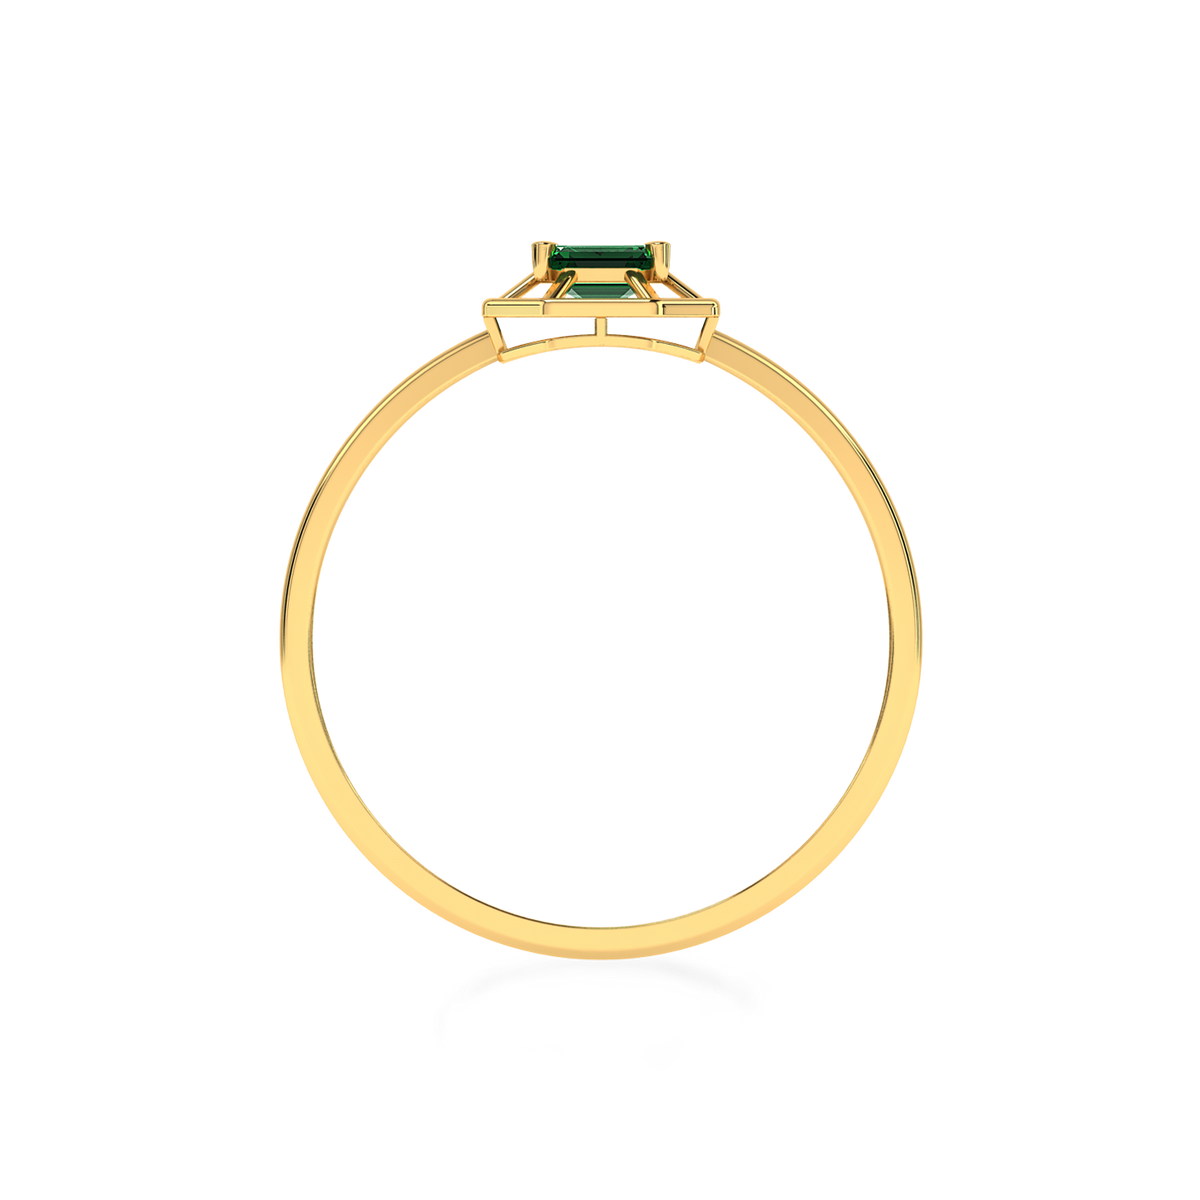 Framed Emerald Gold Ring in 18k | Mabel Chong